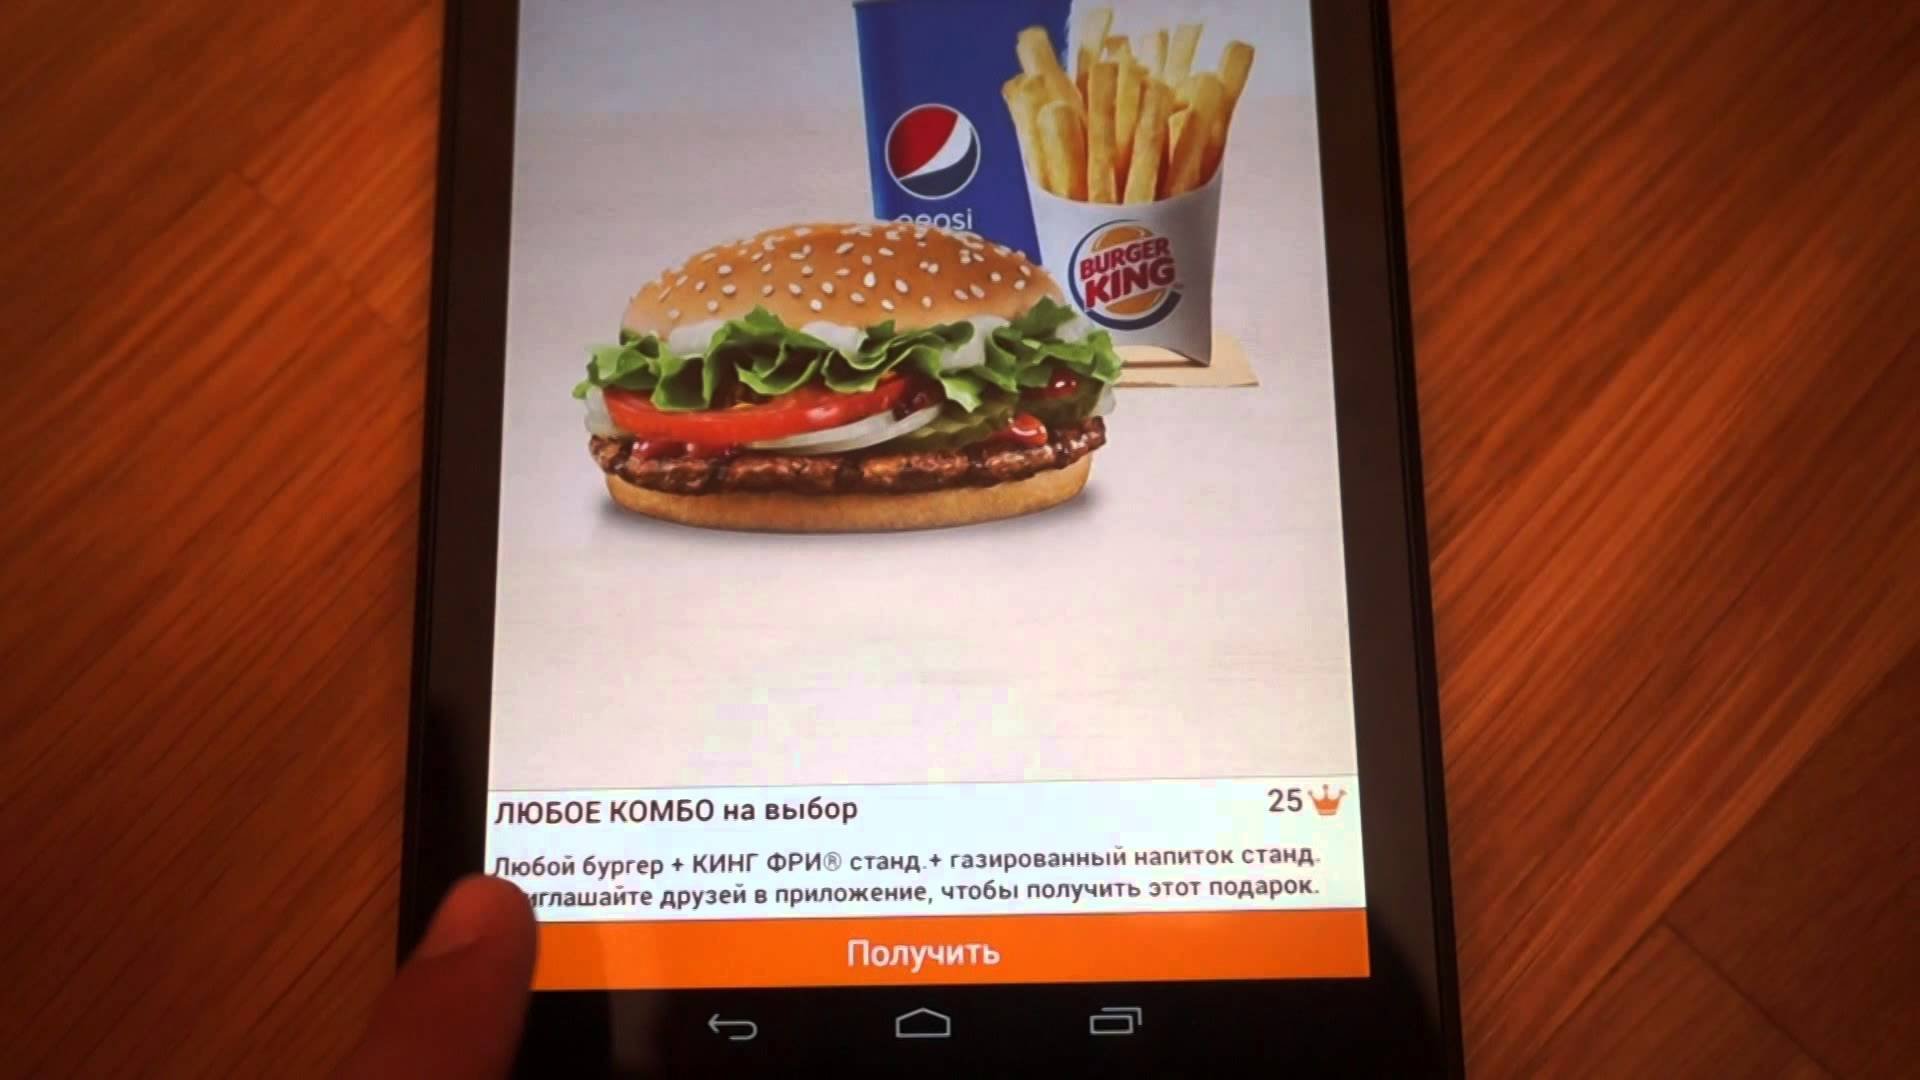 Пользователь рассказал, как приложение Burger King крадет личные данные